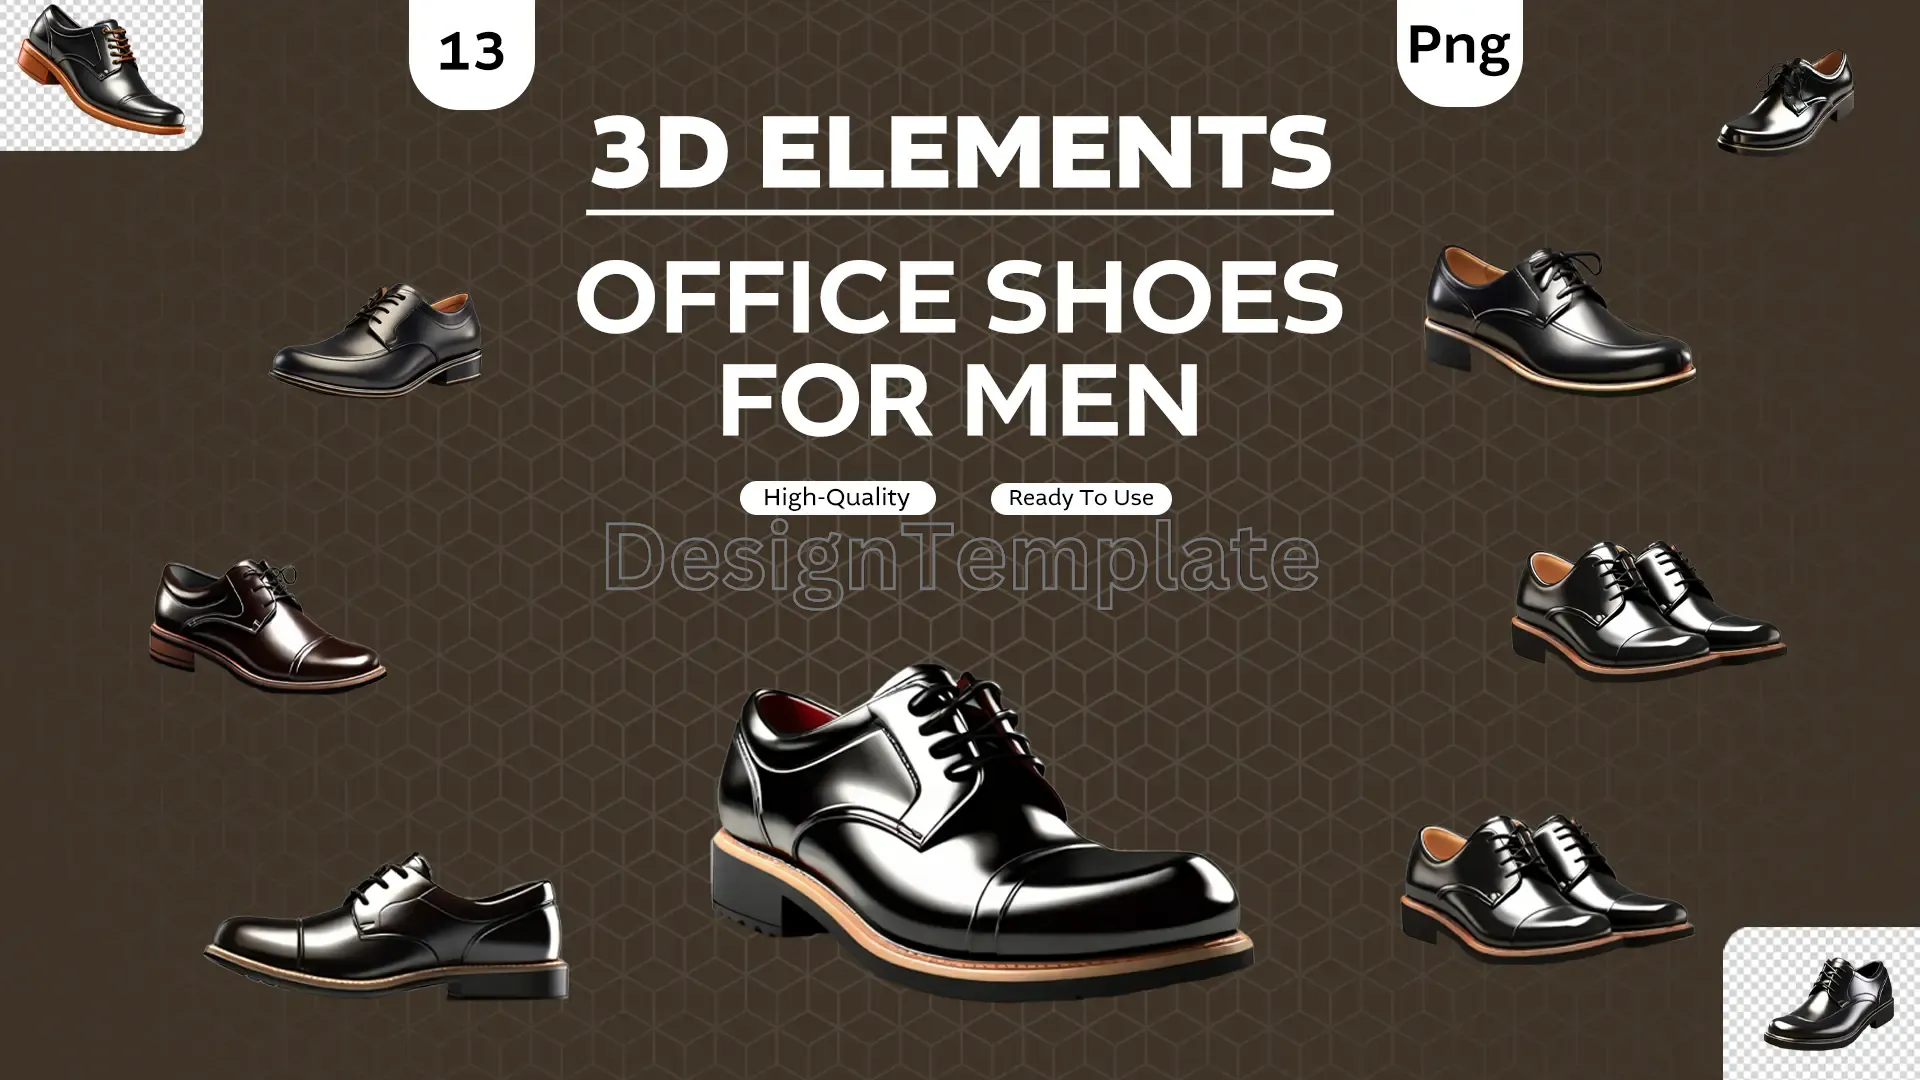 Professional Polish Exquisite 3D Men's Shoes Elements image